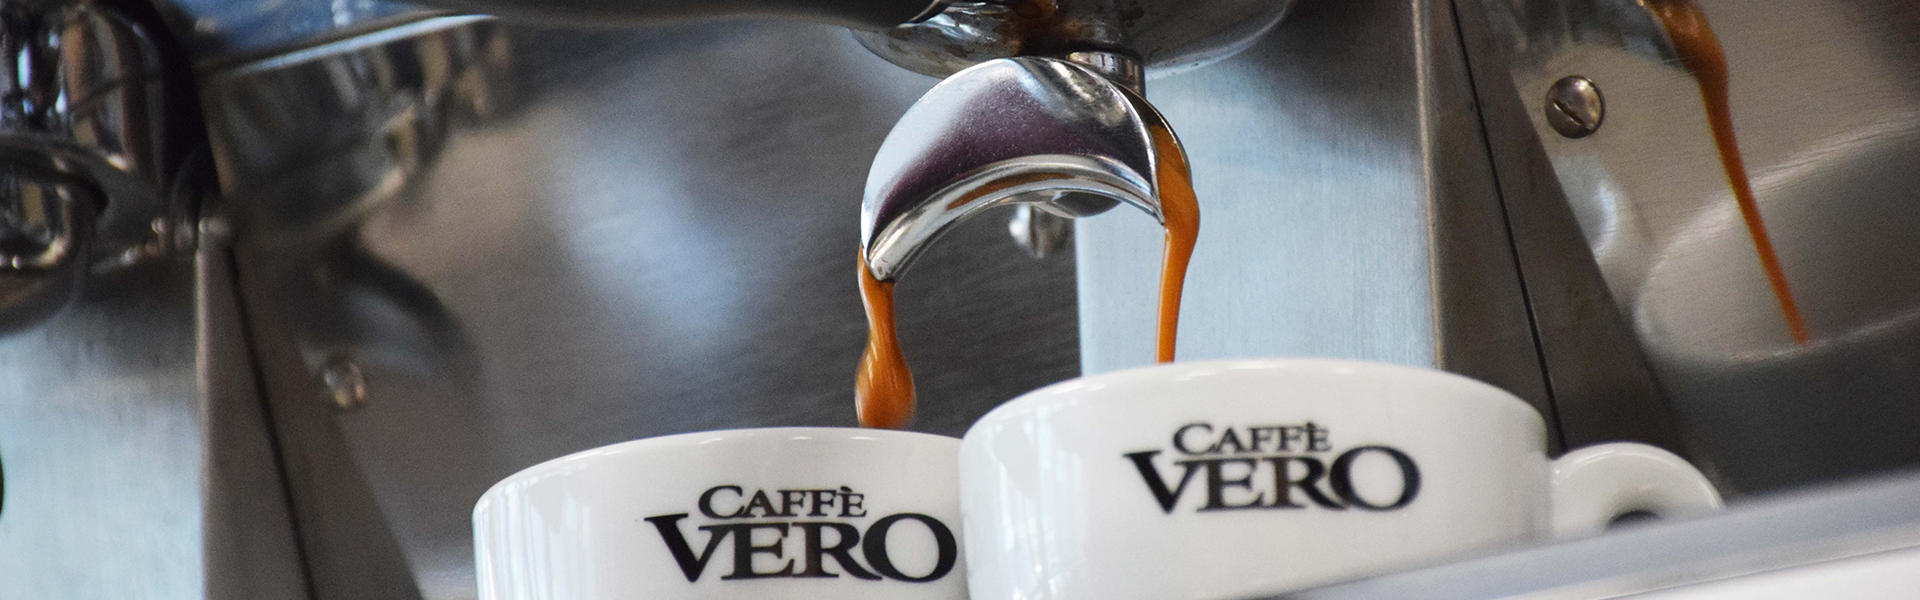 Caffe Vero 6